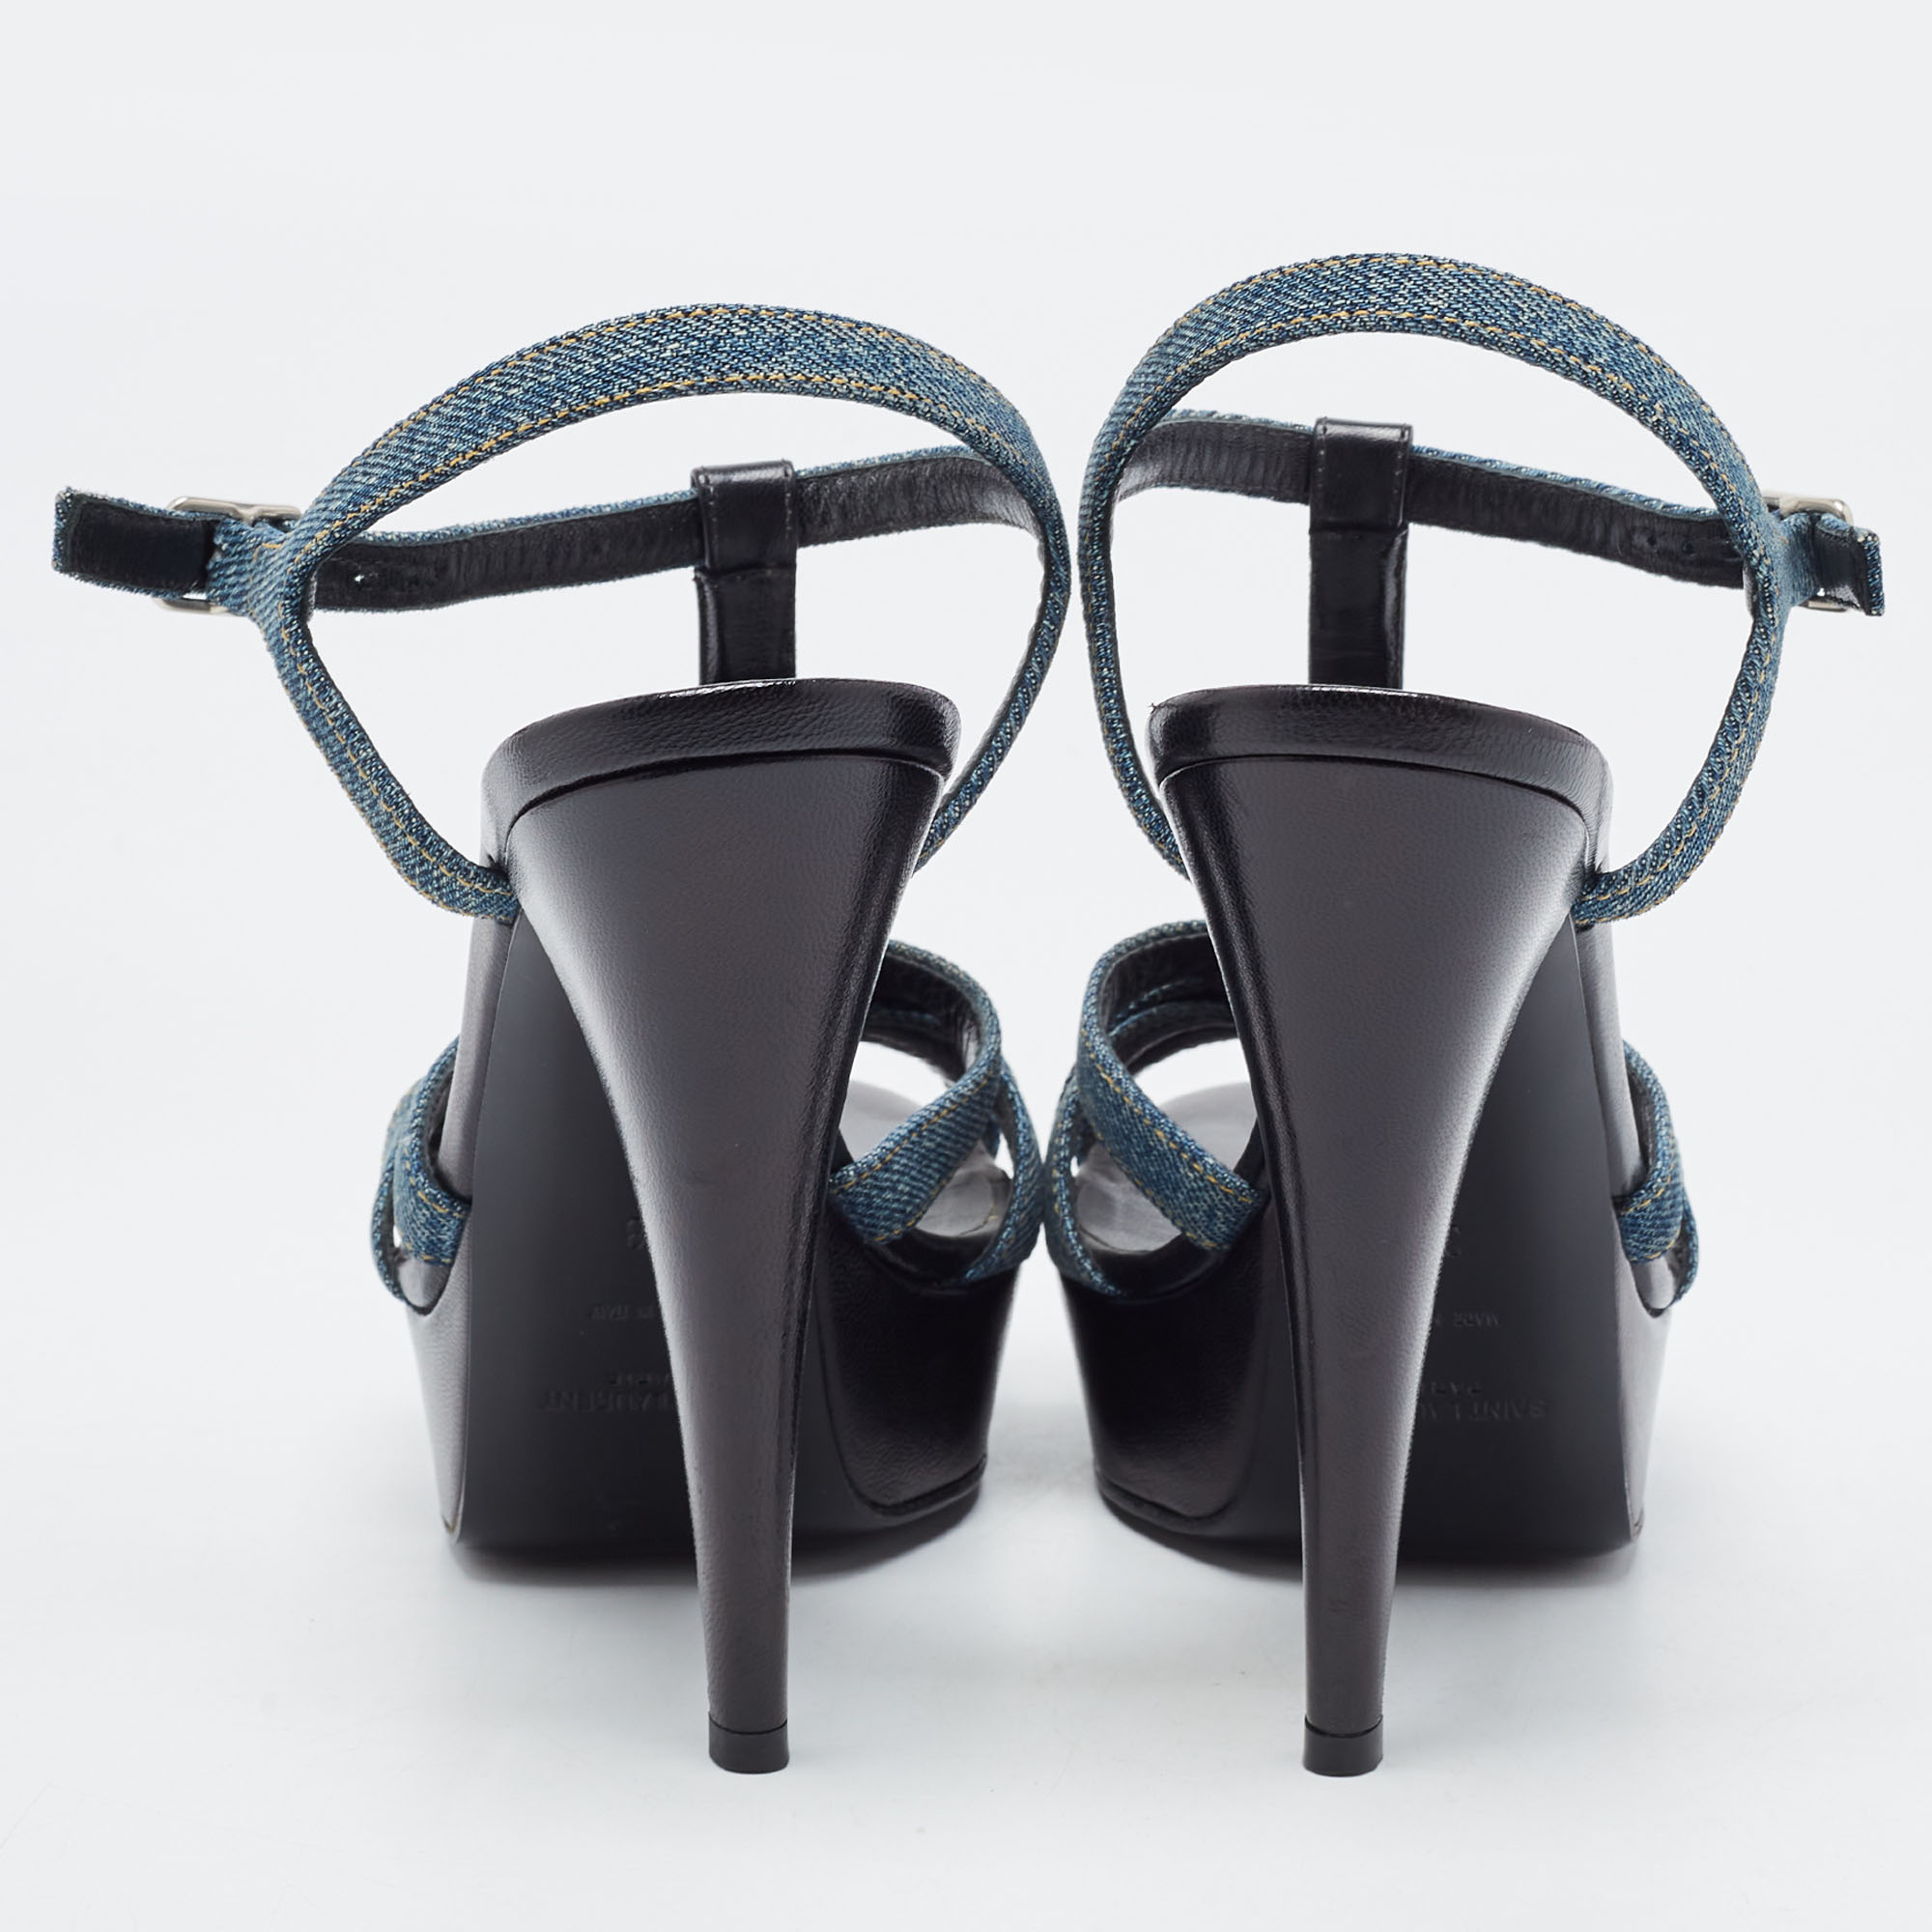 Saint Laurent Blue/Black Denim And Studded Leather Platform Ankle Strap Sandals Size 38